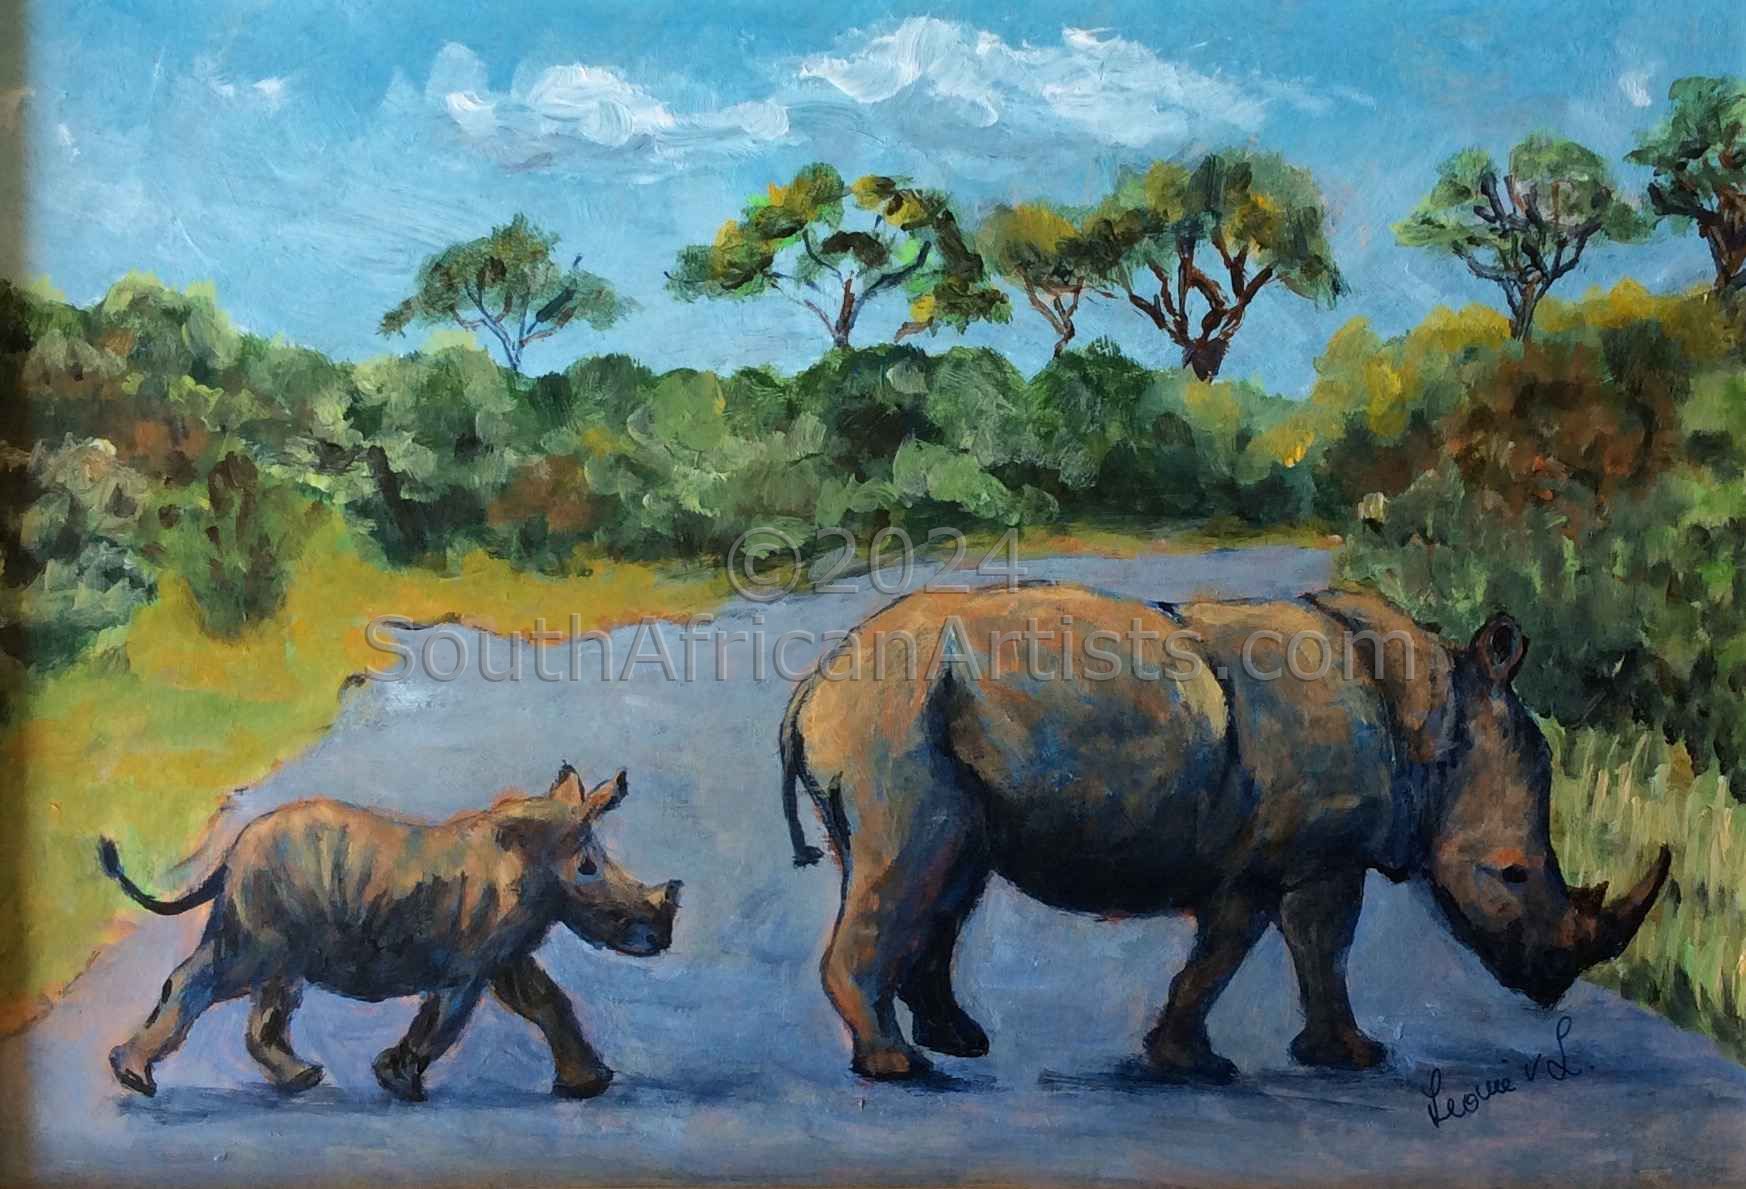 Rhinos at Kruger National Park